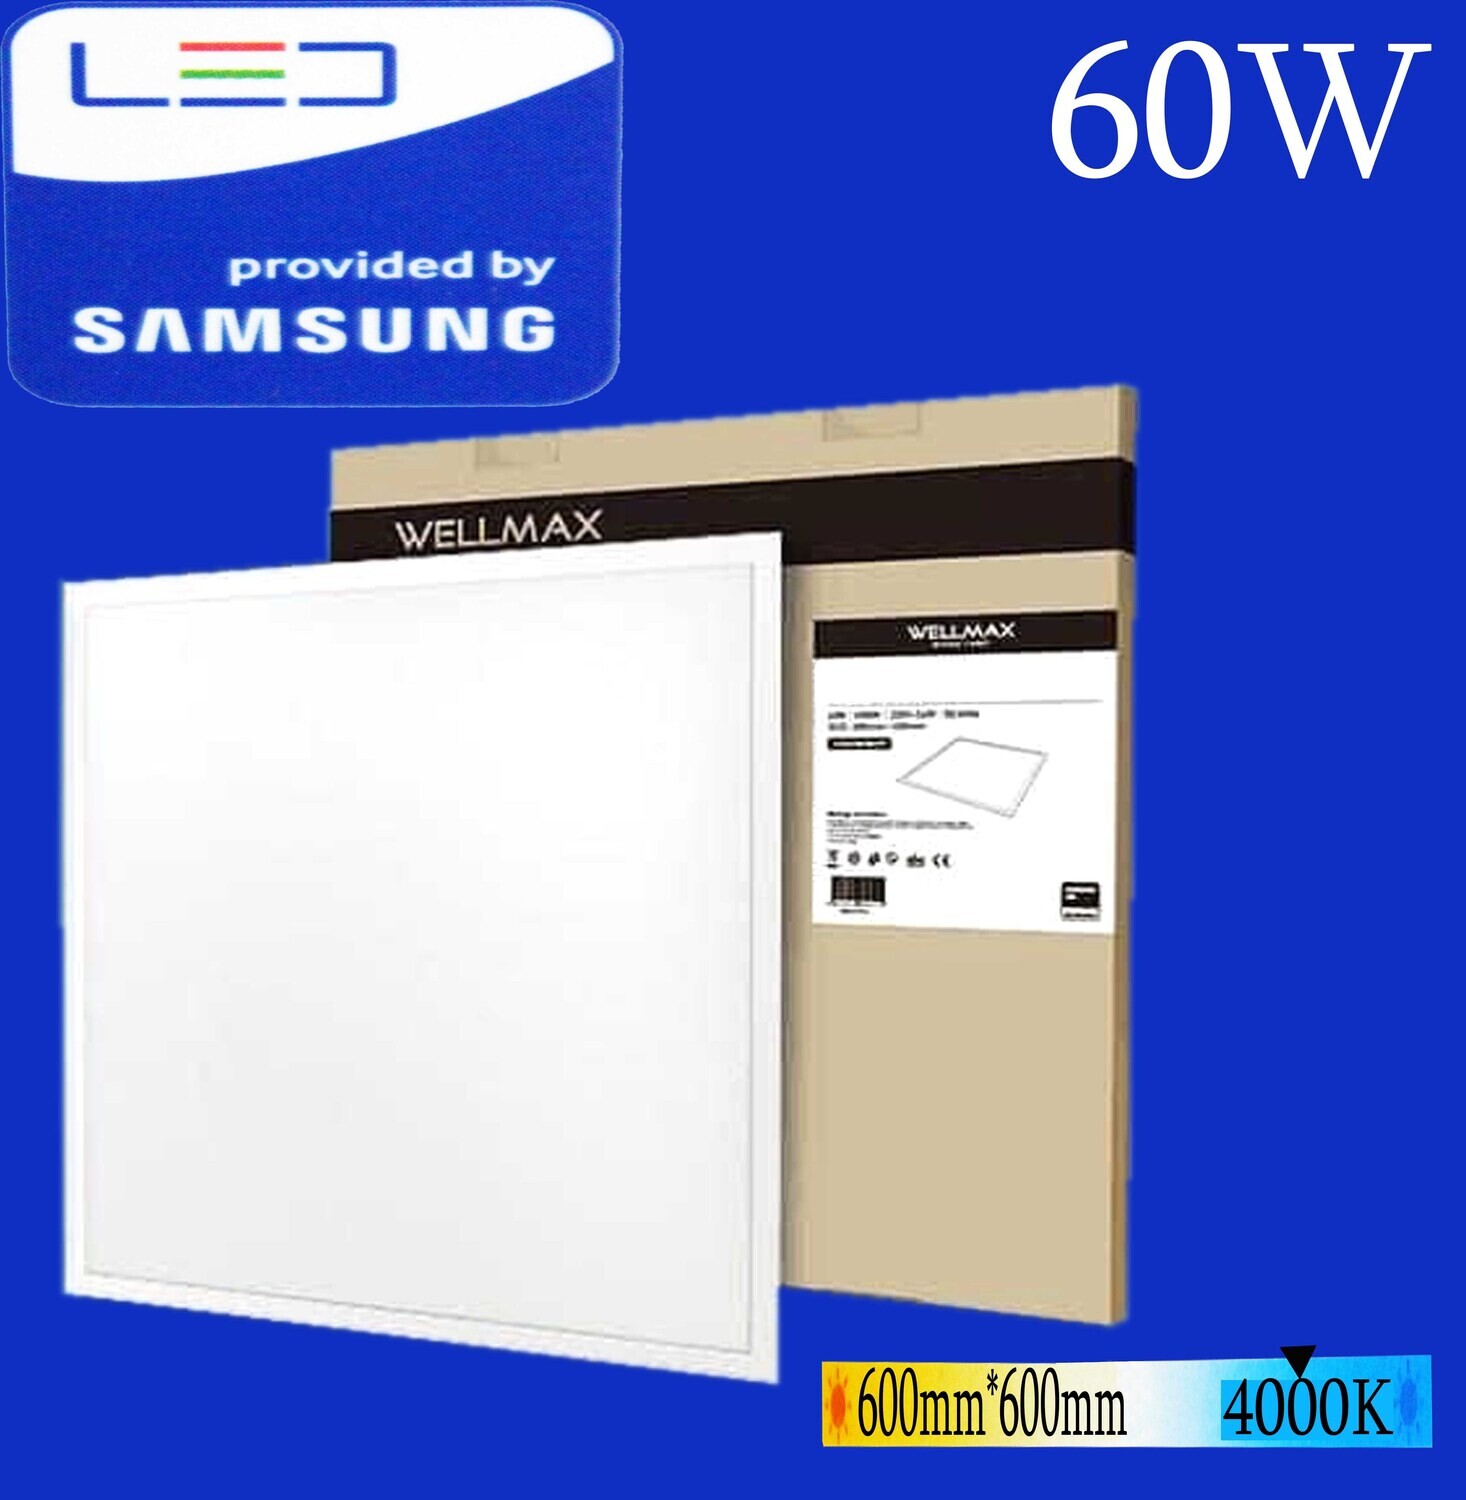 Պլաֆոն LED Wellmax 60W*4000K, Natural white (600մմ*600մմ))